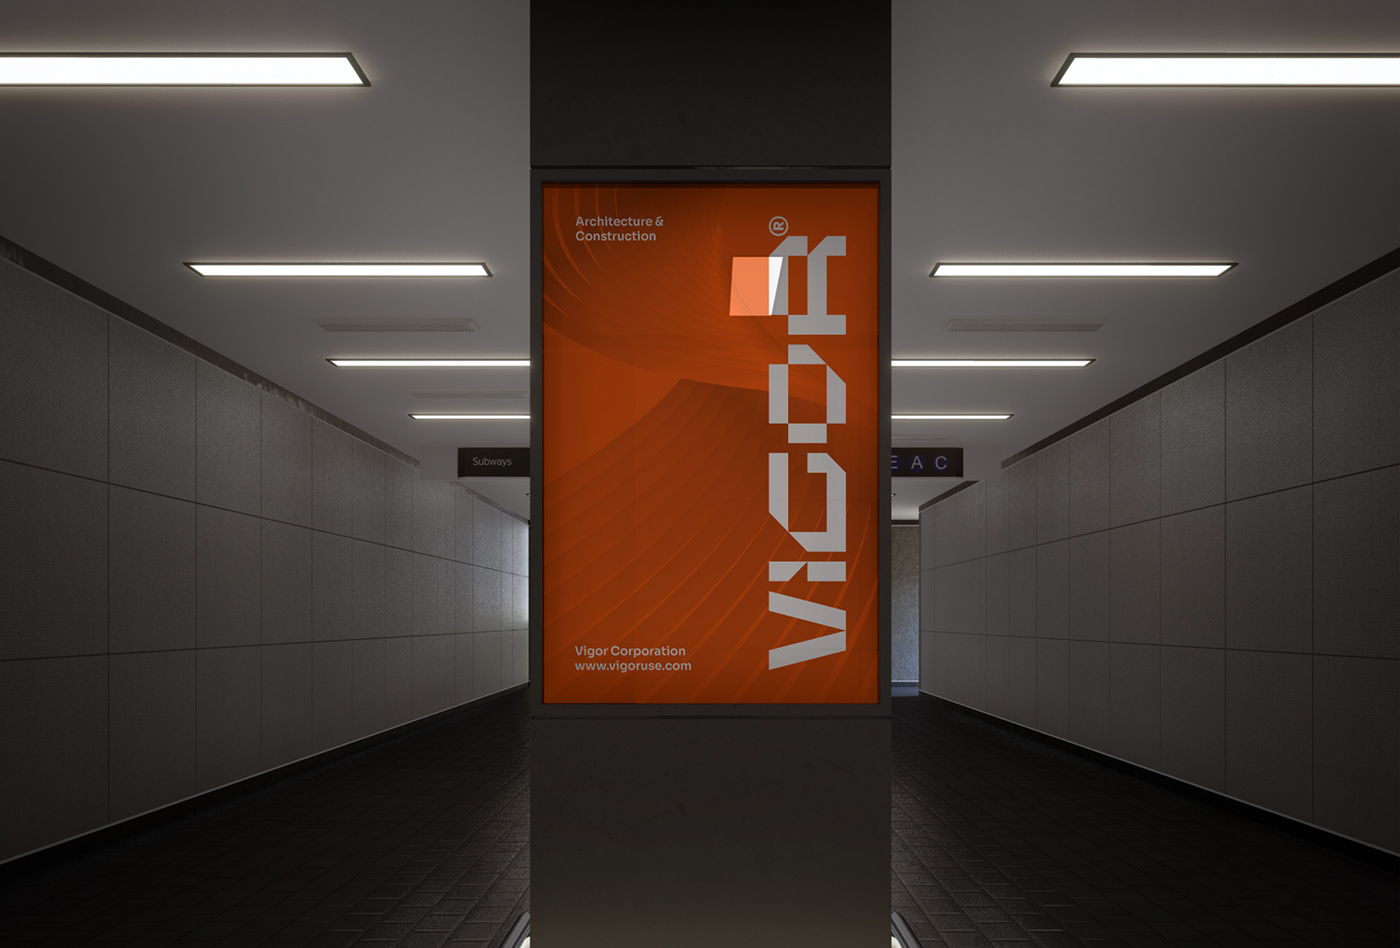 Aplicação da marca em um outdoor vertical em um metrô